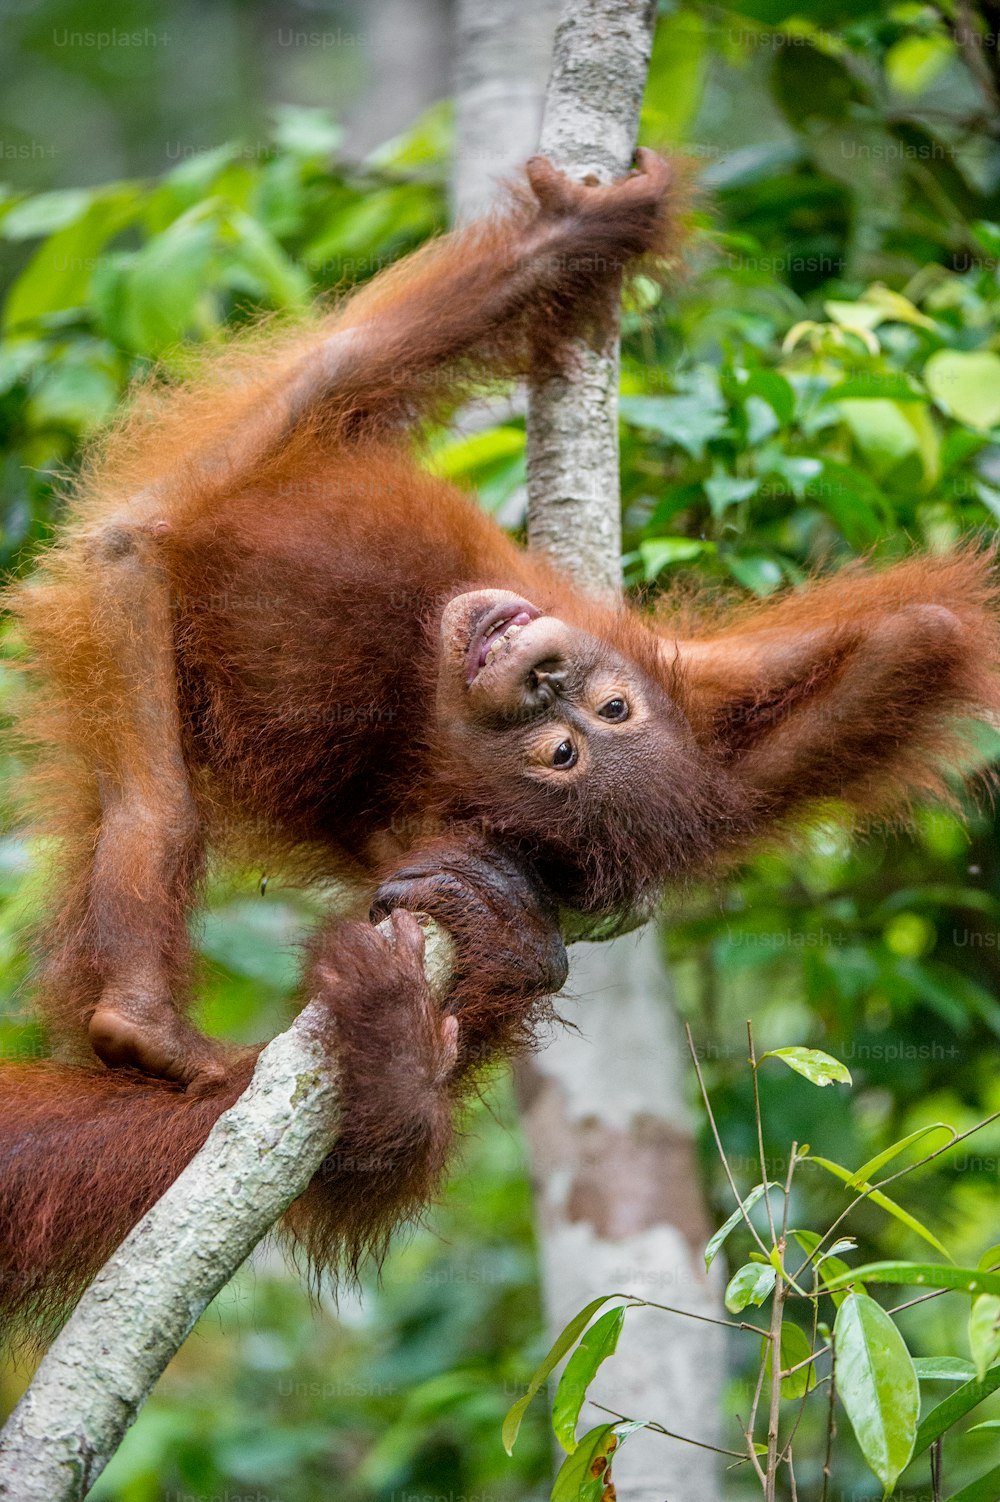 Baby-Orang-Utang in einem natürlichen Lebensraum. Borneo-Orang-Utan (Pongo pygmaeus wurmmbii) in der wilden Natur. Regenwald der Insel Borneo. Indonesien.